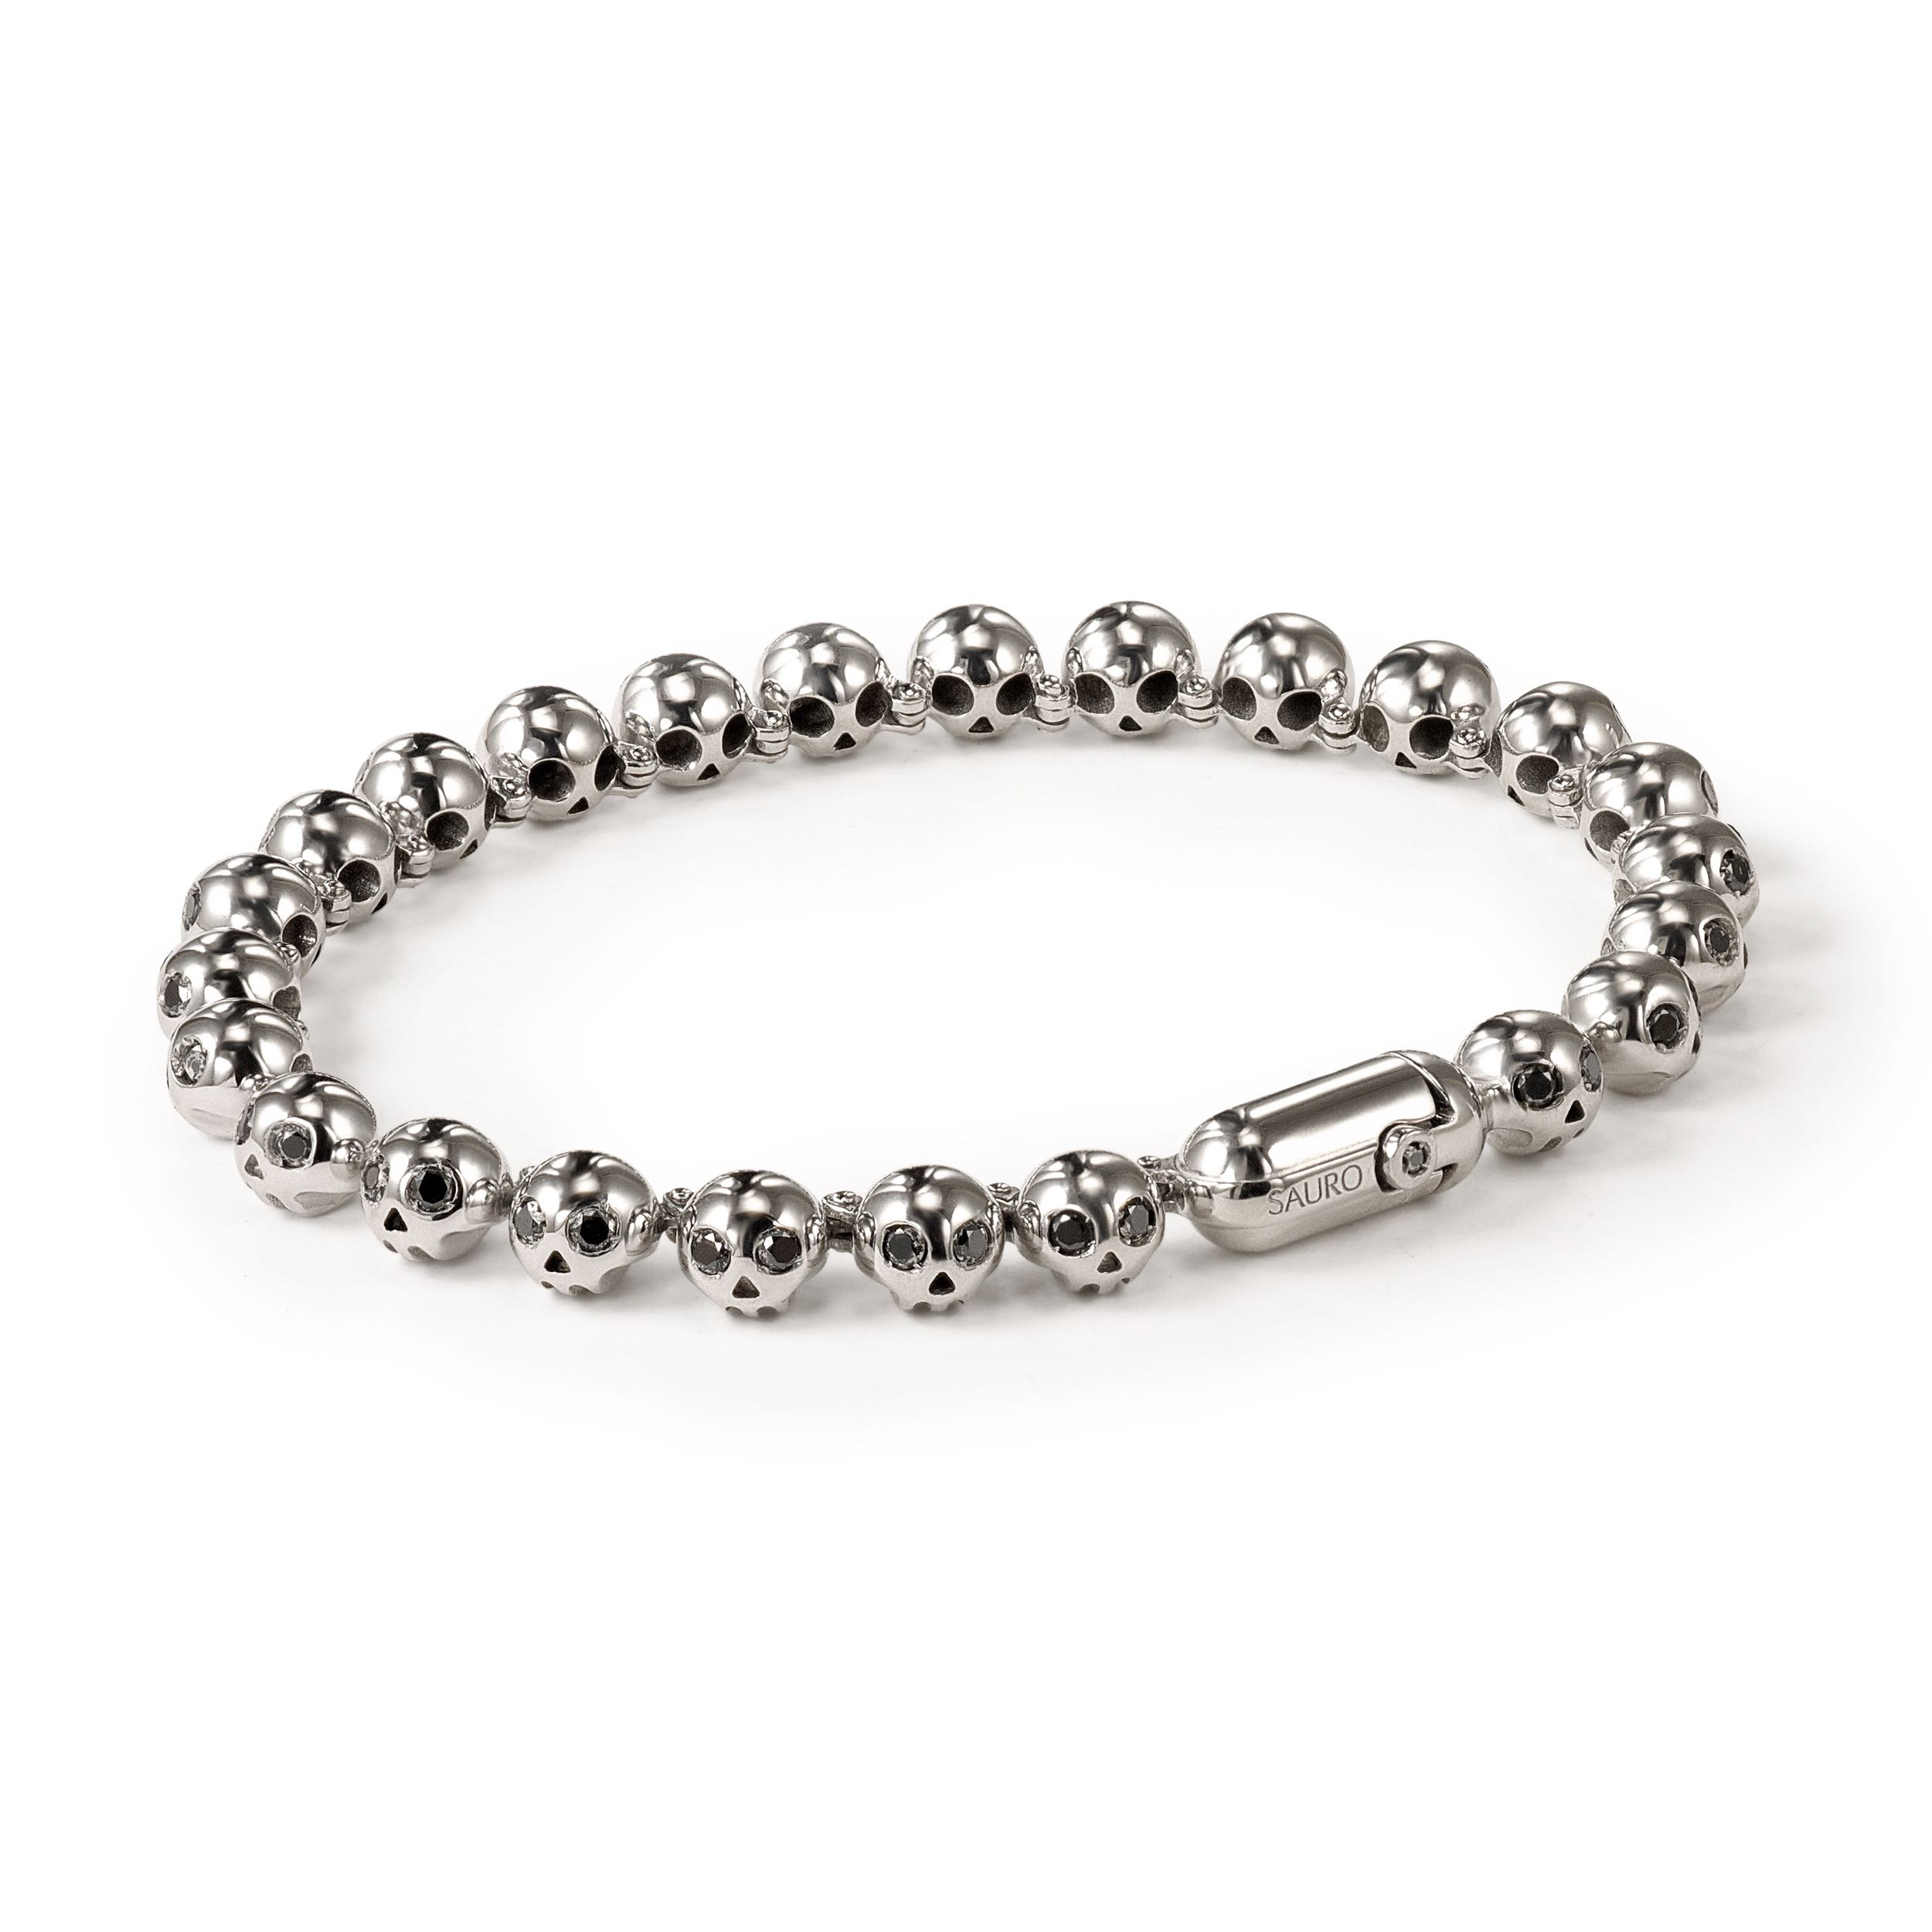 Real 999 Sterling Silver Men's Bangle Bracelet - 6.9 CM – Karizma Jewels